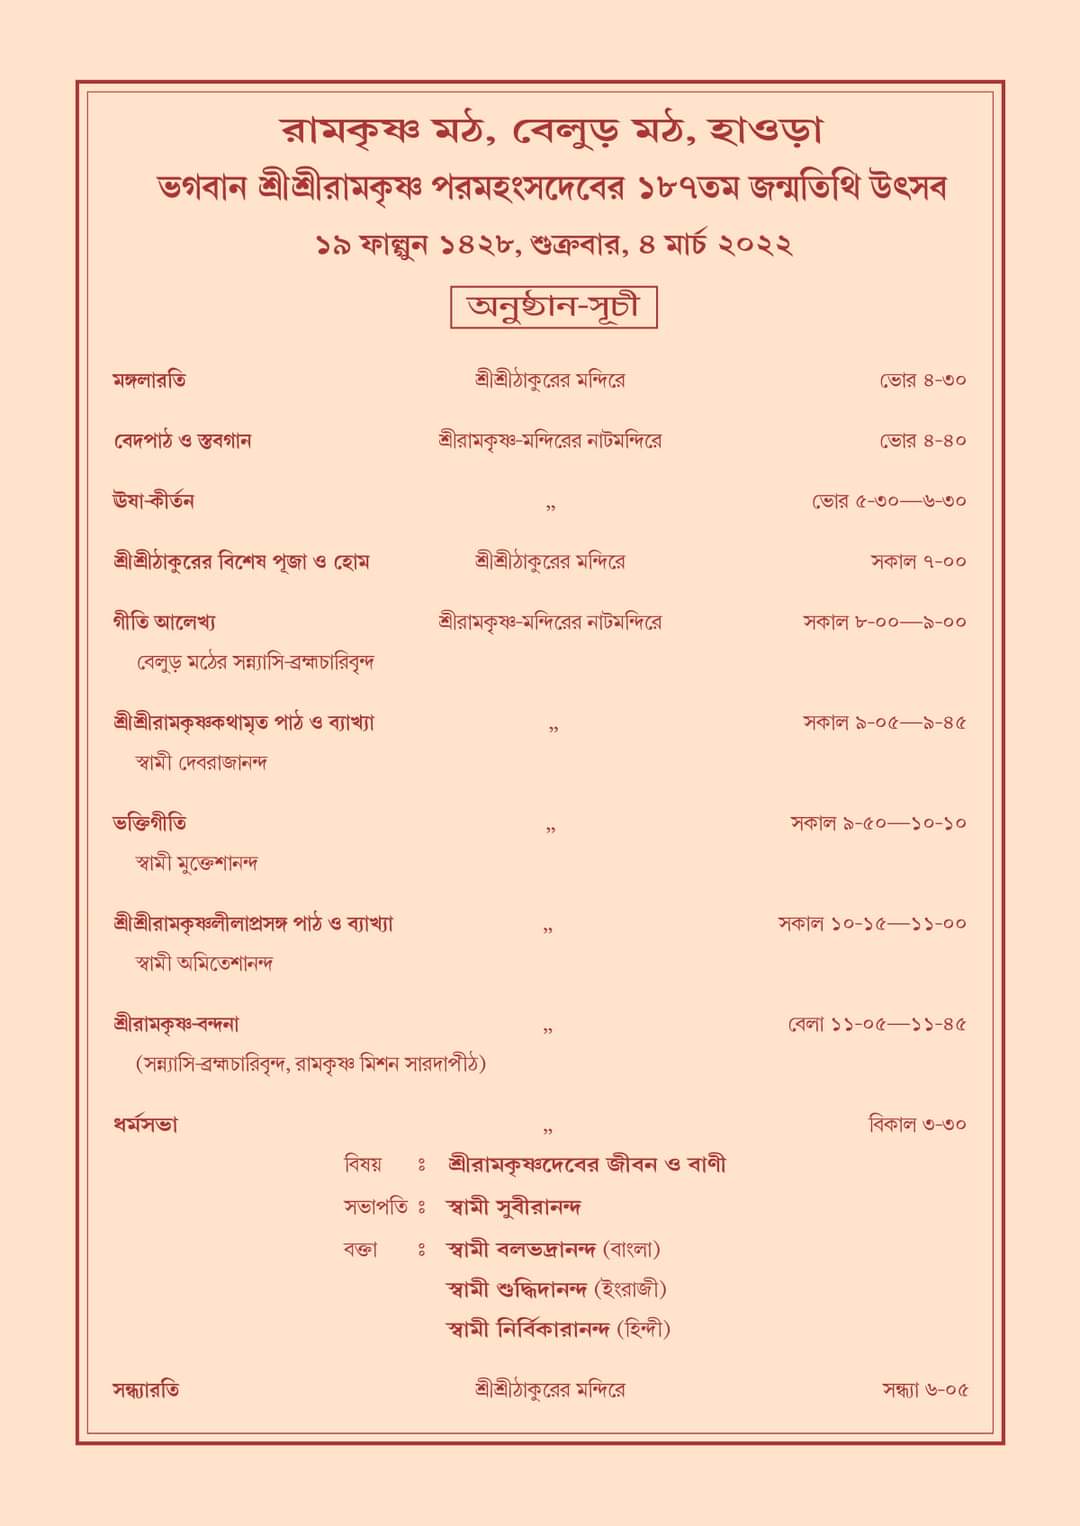 belur math announces schedule to celebrate sri ramkrishna 187th birth anniversary